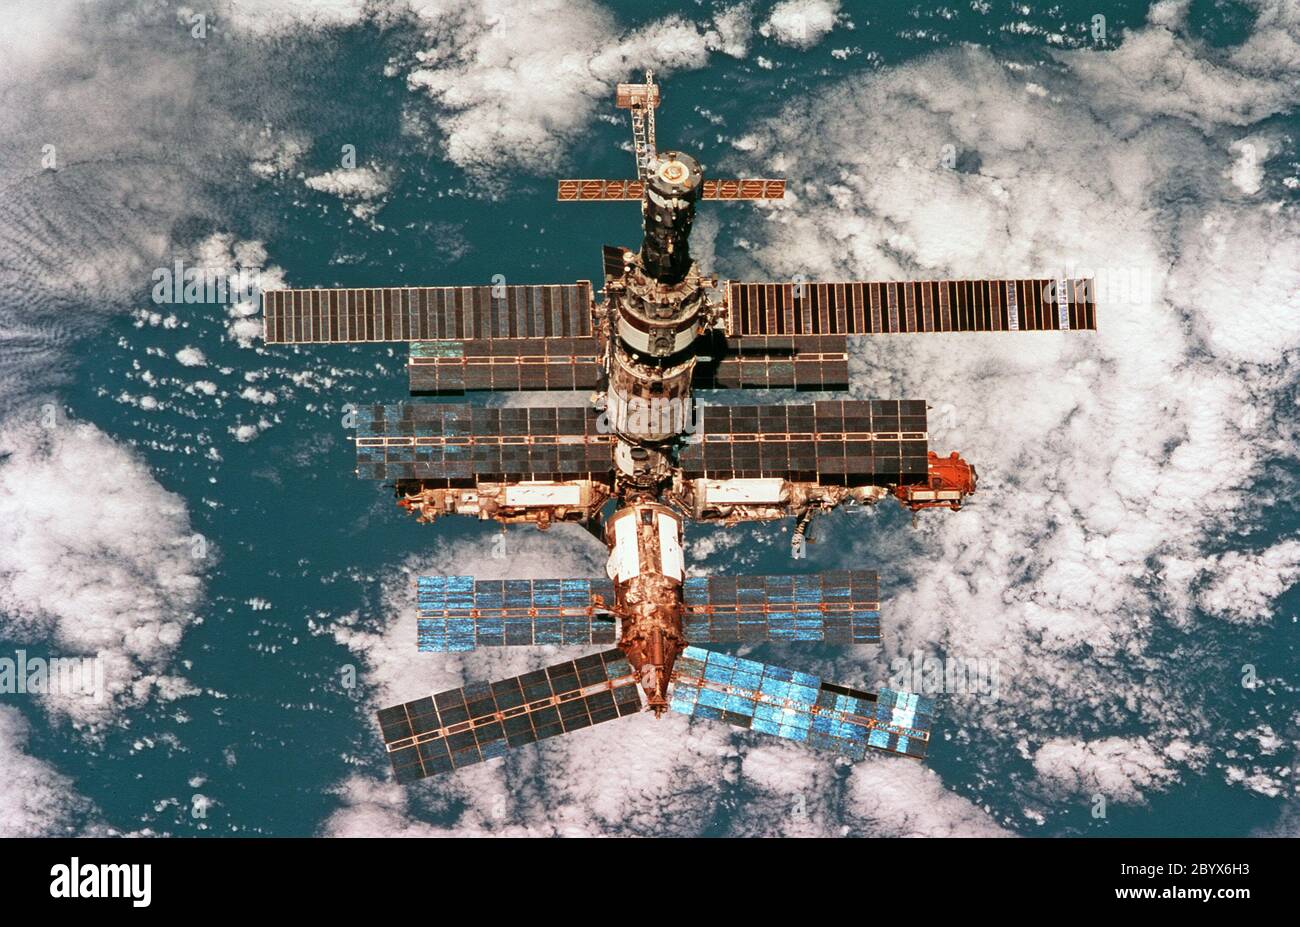 Mir org. В тихом океане затоплена орбитальная станция «мир». 1986 Запущена Советская орбитальная станция «мир». Затопление орбитальной станции «мир». Станция мир 2001.